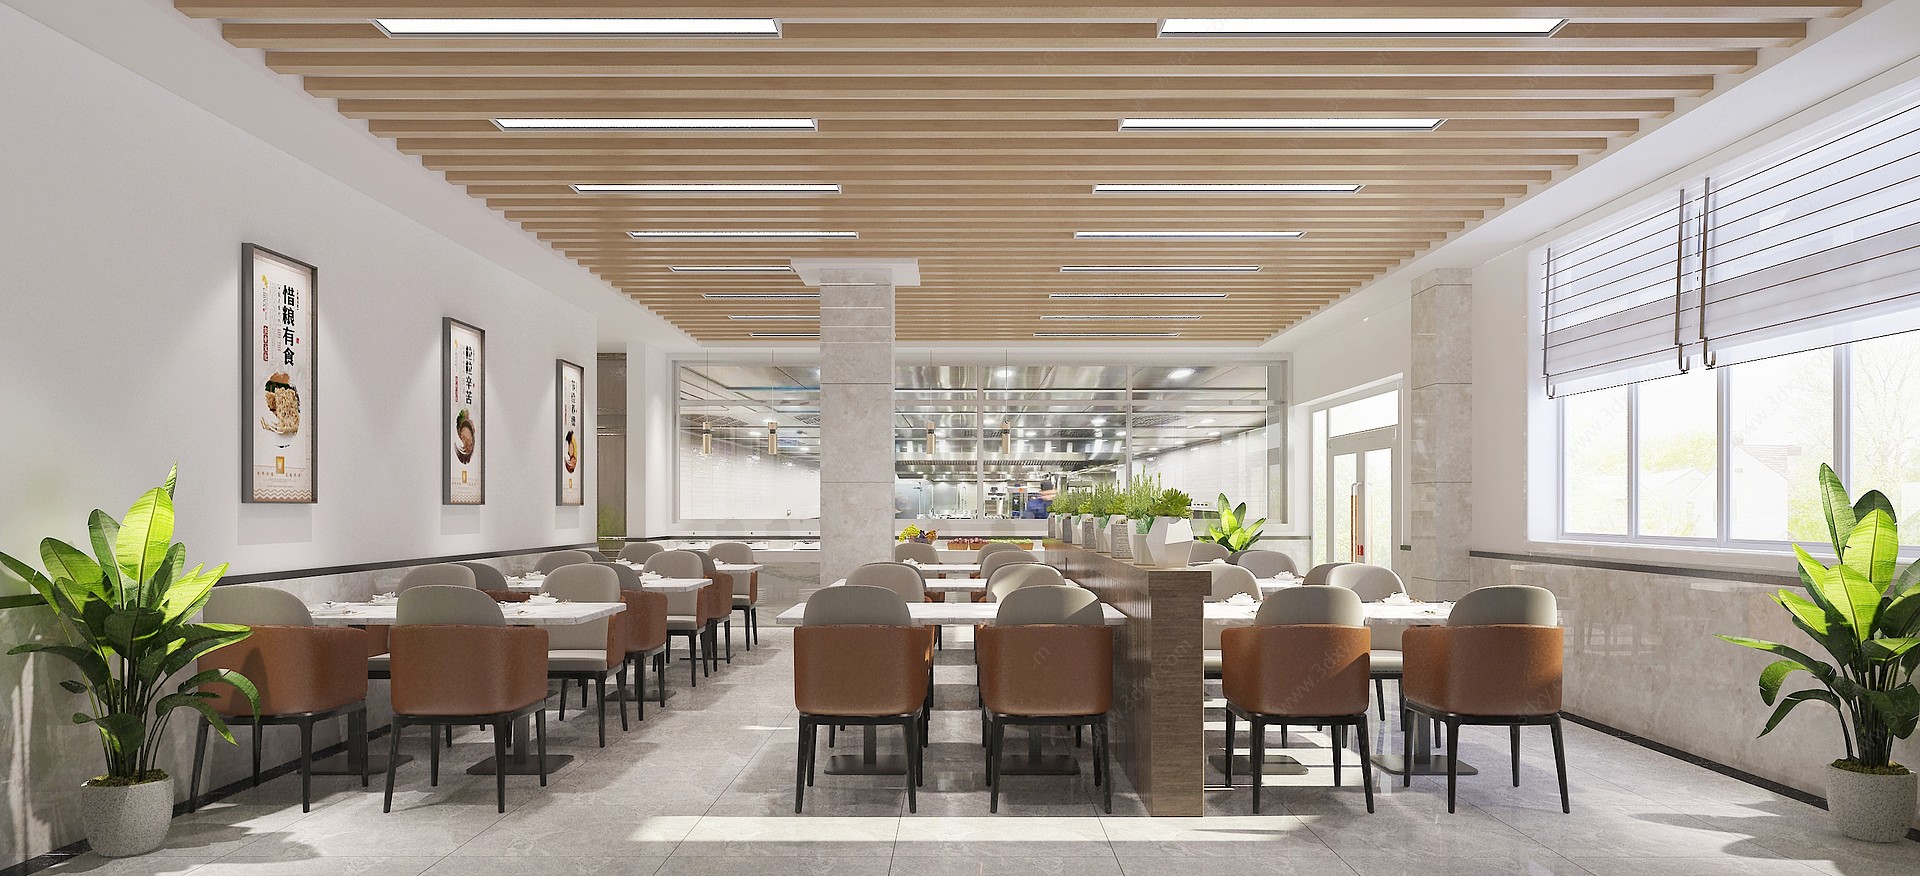 现代食堂餐饮空间3D模型